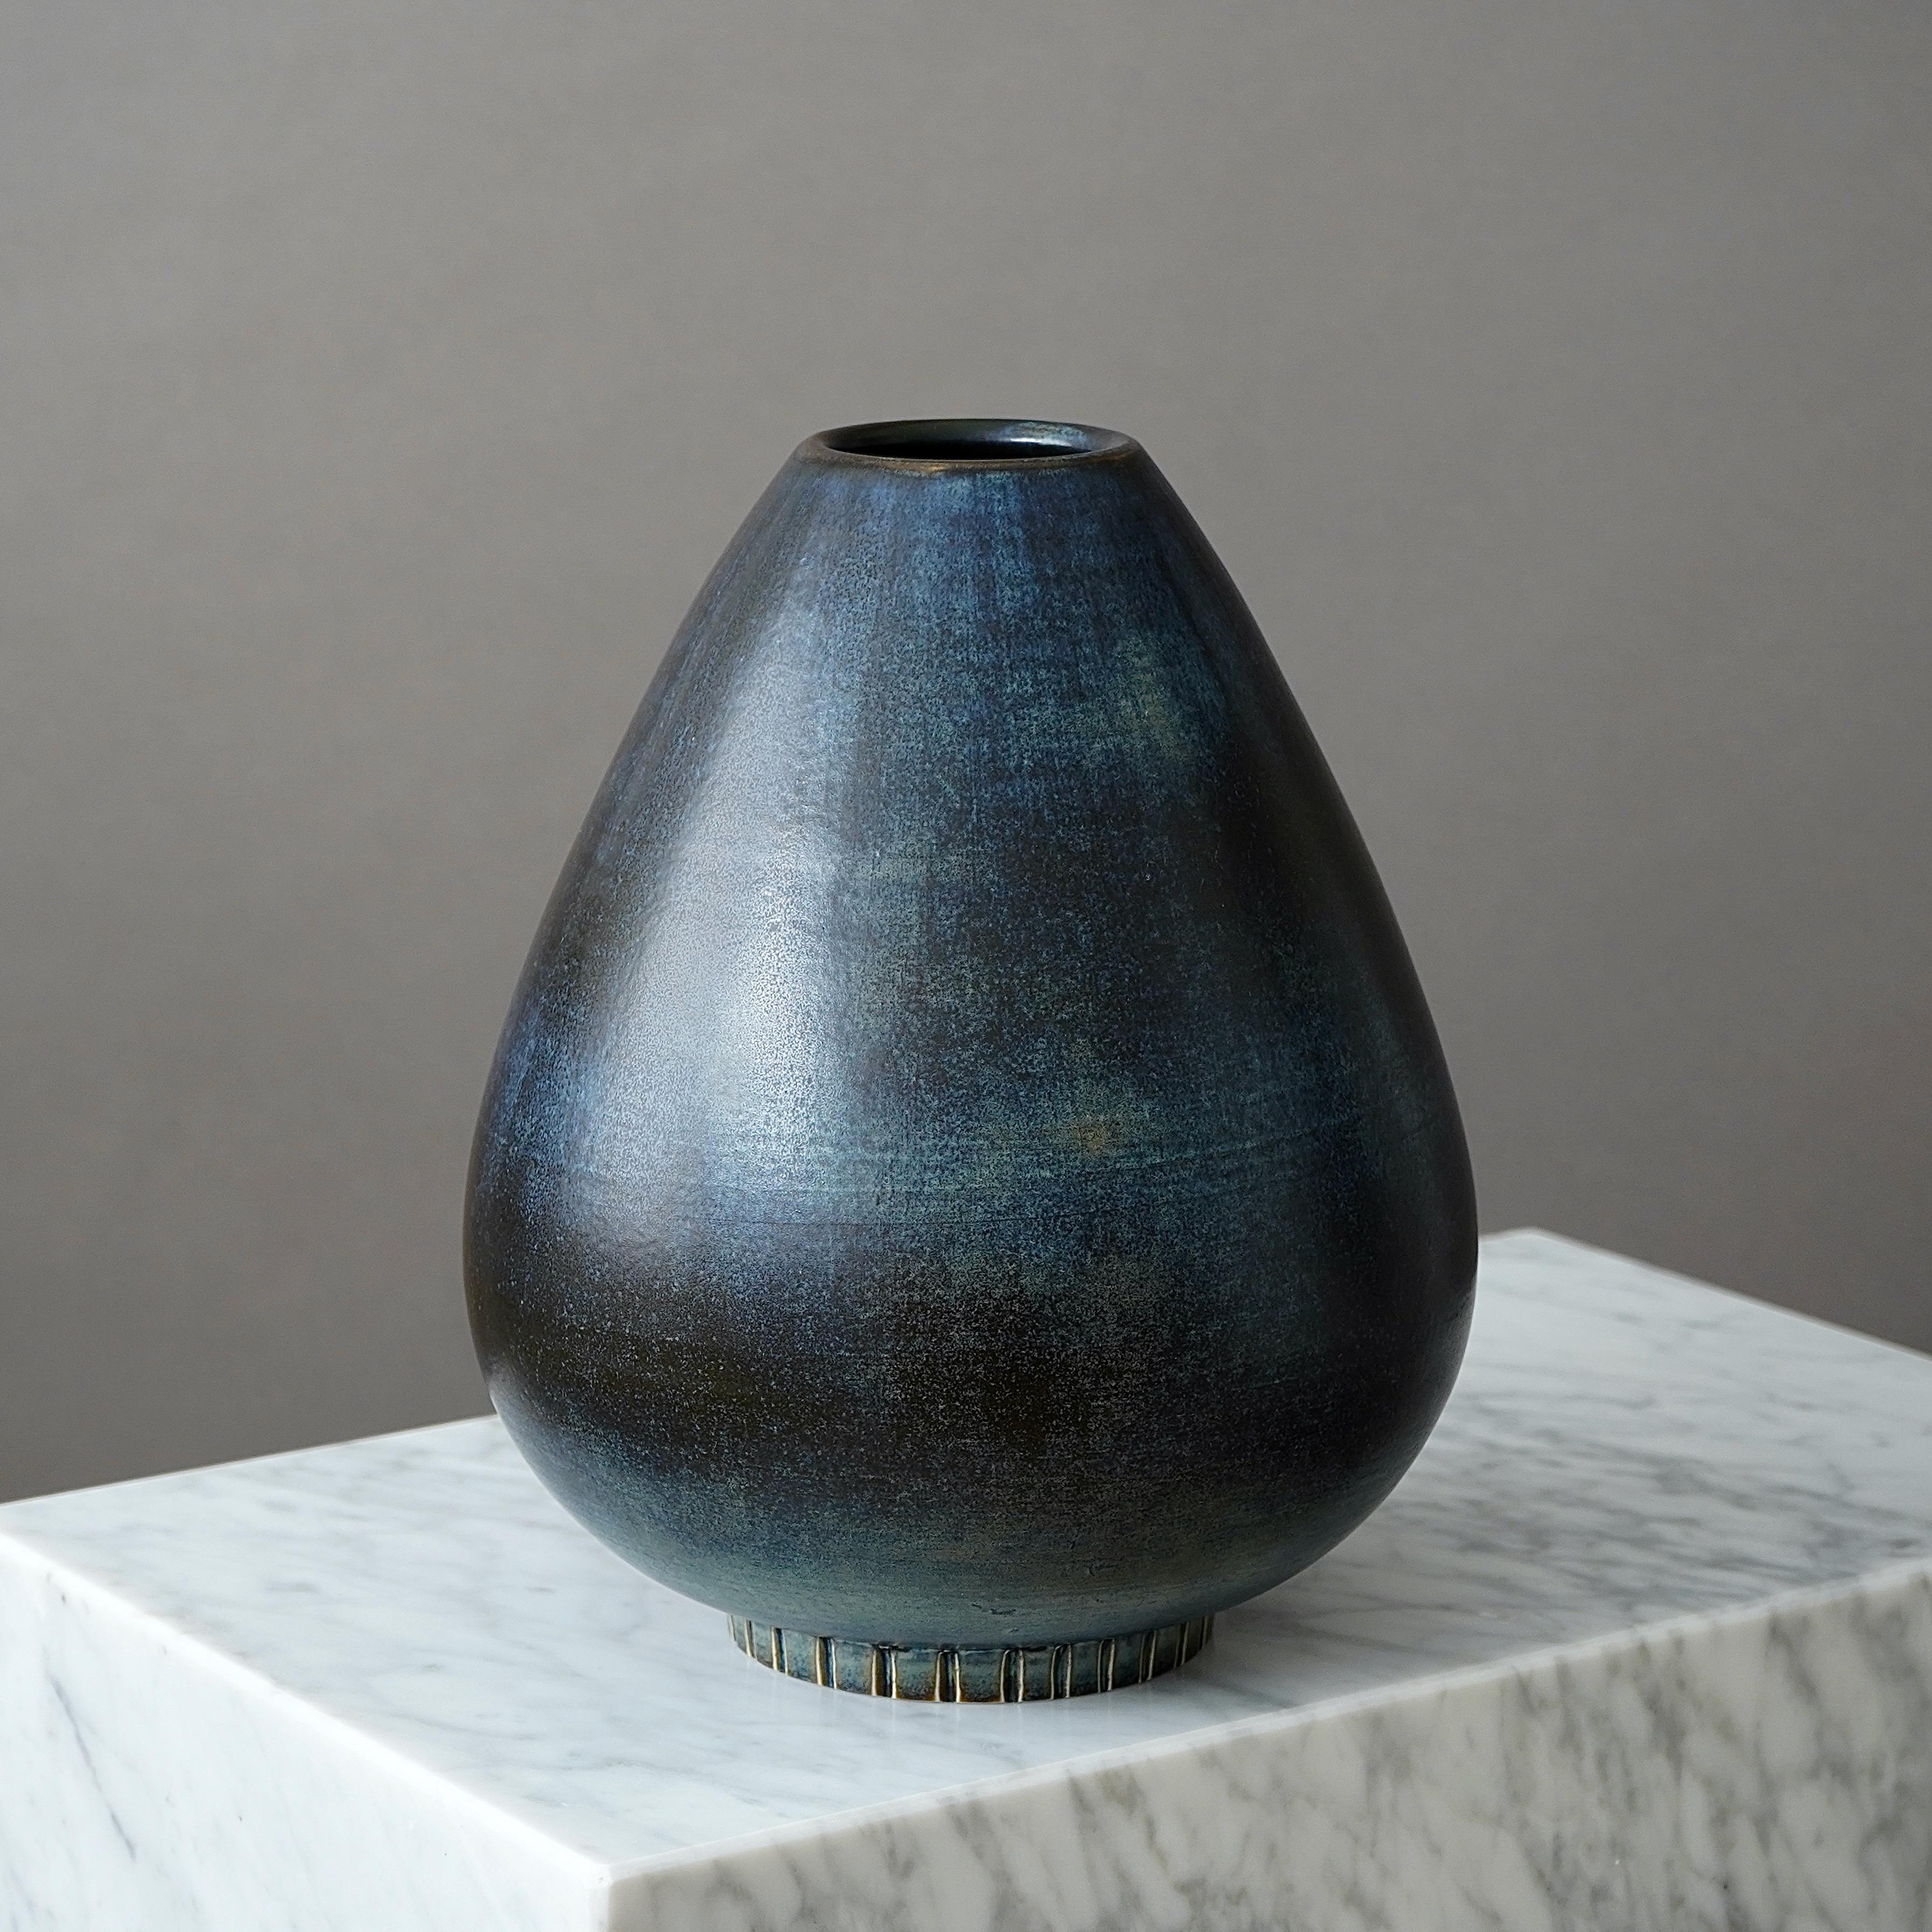 Un grand et beau vase en grès avec une glaçure étonnante. 
Conçu par Gunnar Nylund pour Rorstrand, Suède, années 1940.  

Excellent état. Signature incisée 